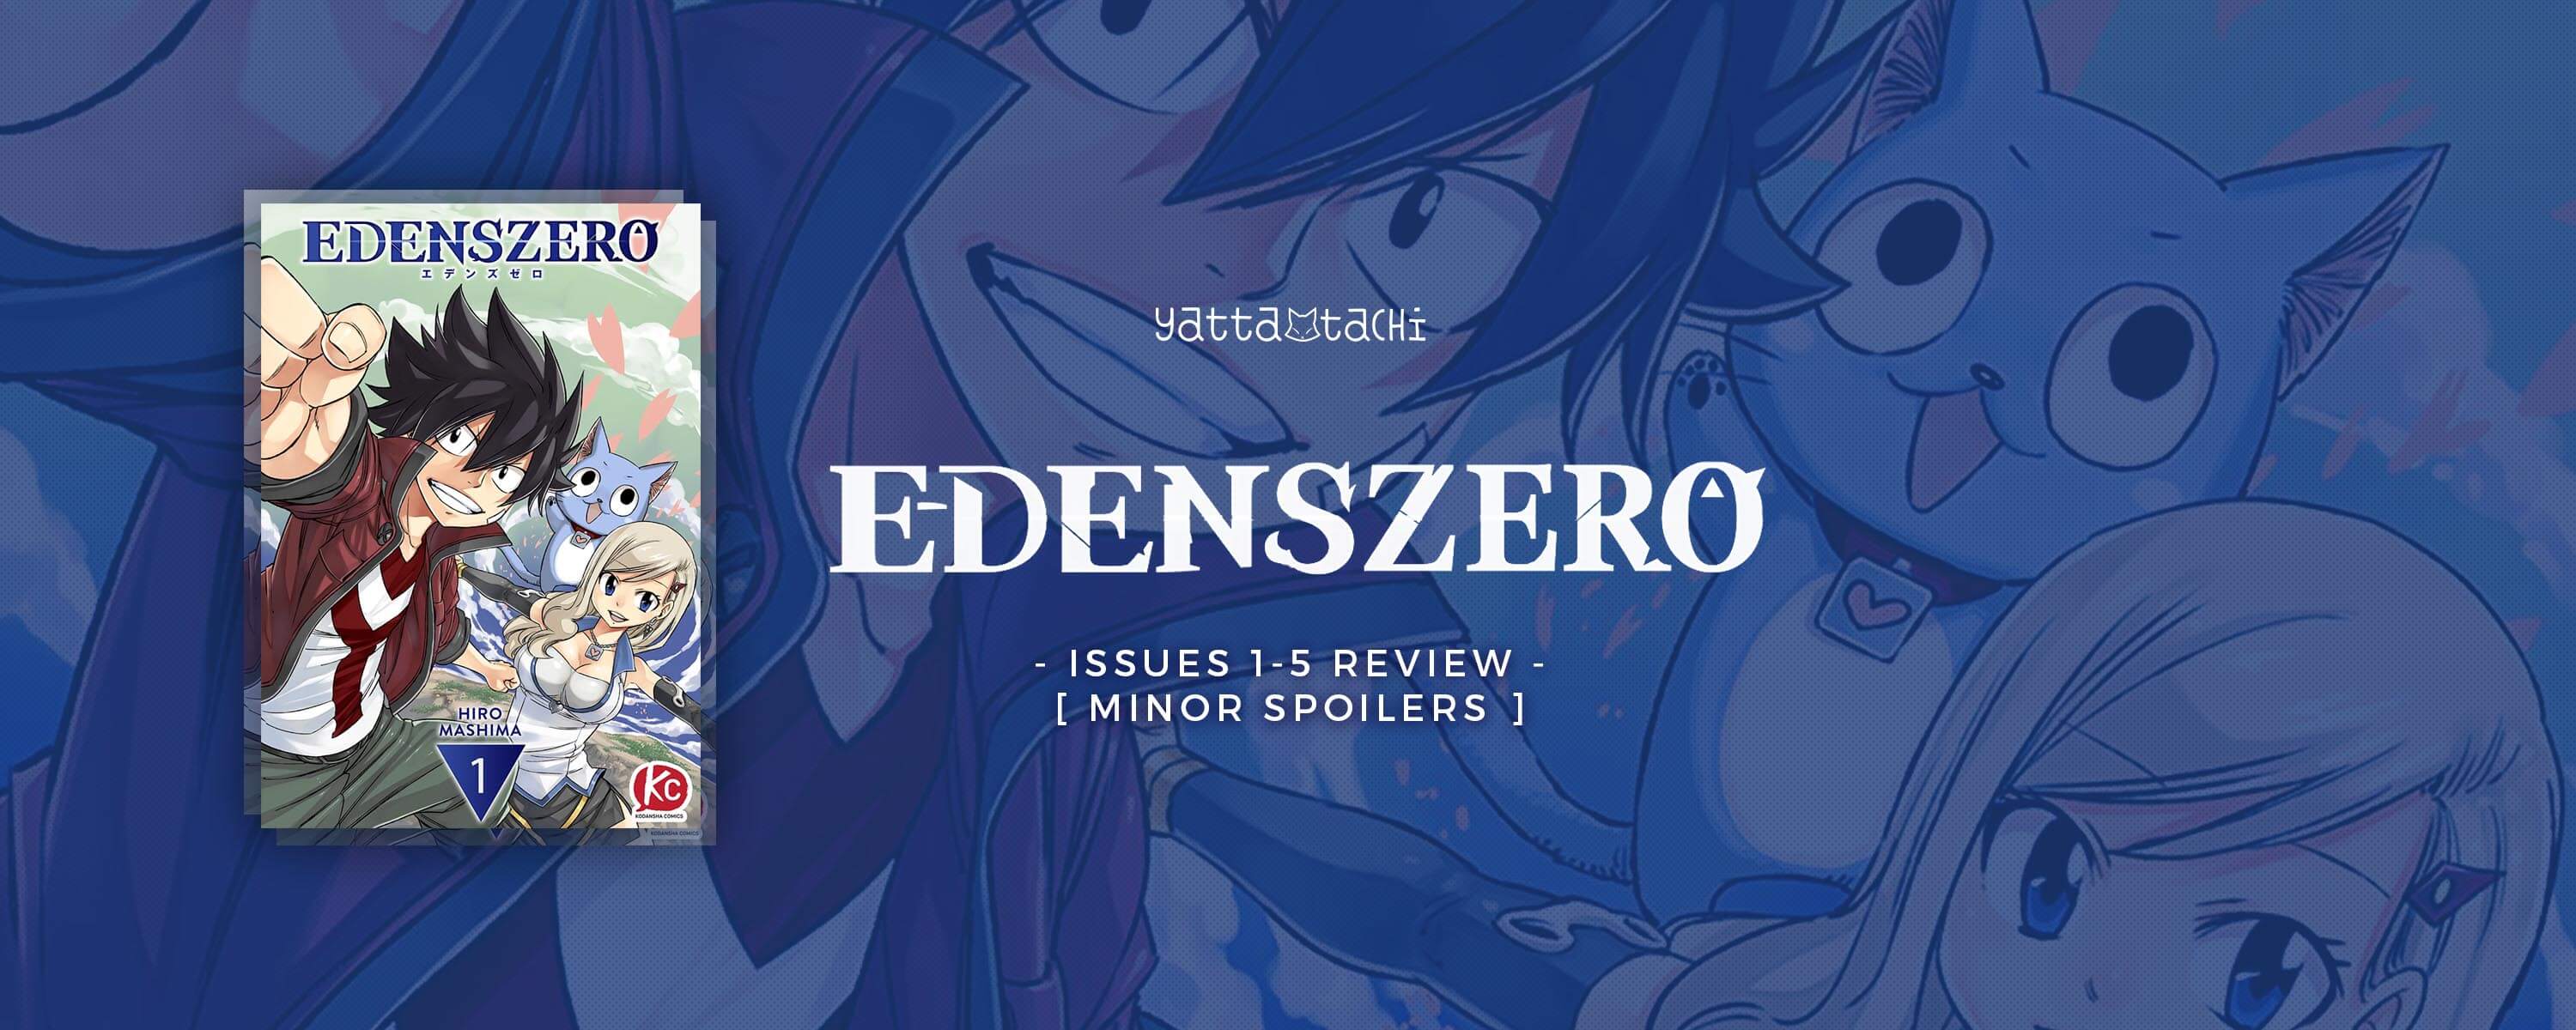 Edens Zero 5 books collection Vol 1-5 by Hiro Mashima